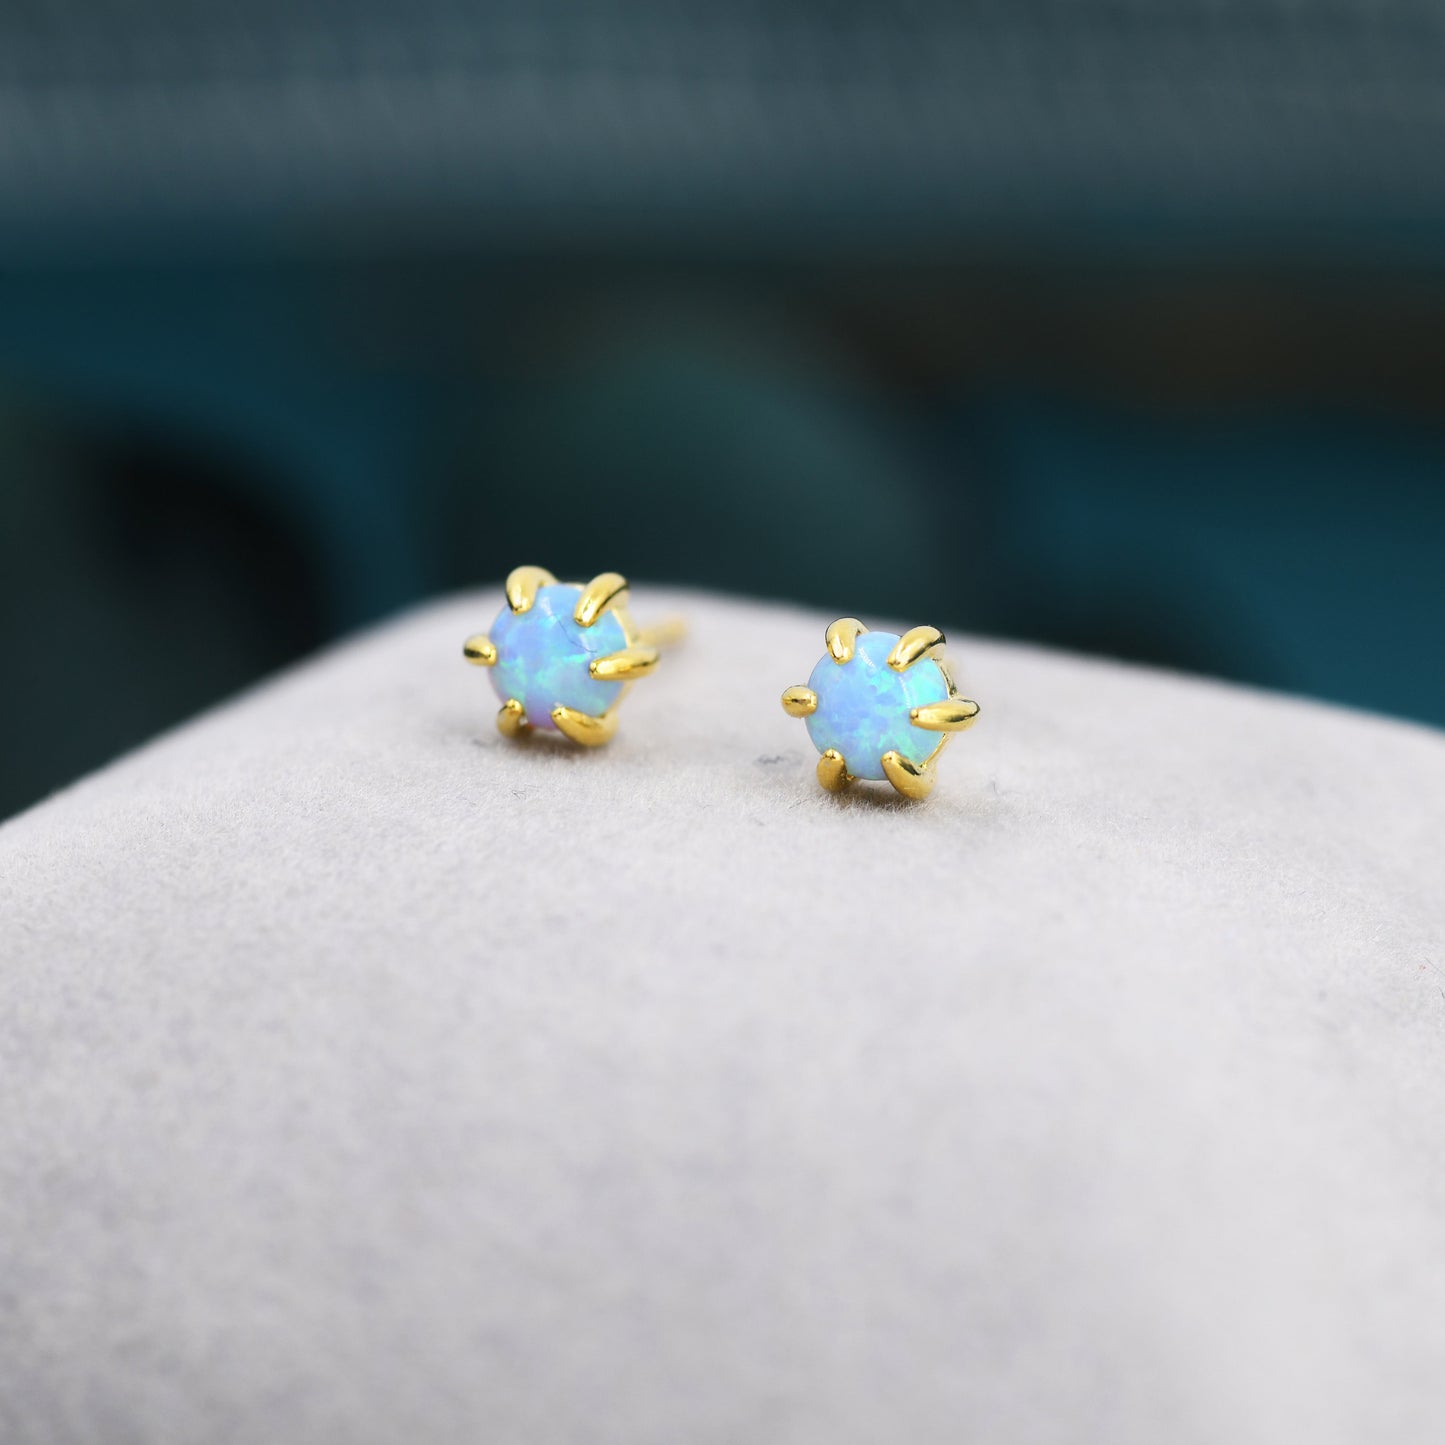 Blue Opal Long Prong Stud Earrings in Sterling Silver, Silver or Gold, Opal Earrings, Tiny Opal Earrings, Dainty Opal Earrings